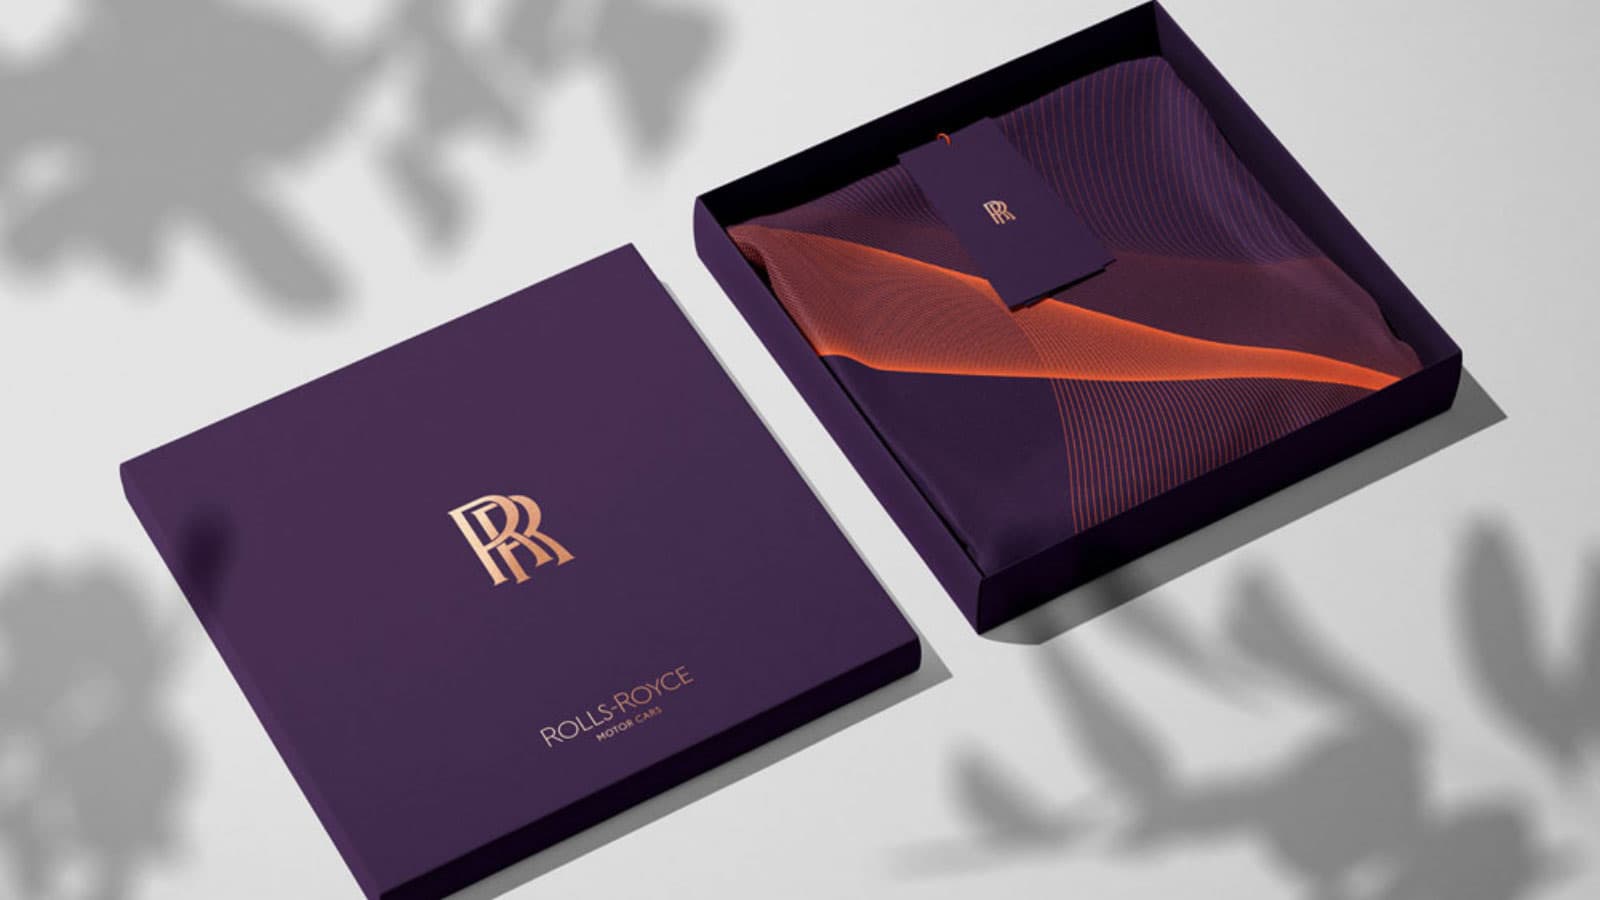 Rolls-Royce ra mắt bộ nhận diện thương hiệu mới – hiện đại và trẻ trung hơn 